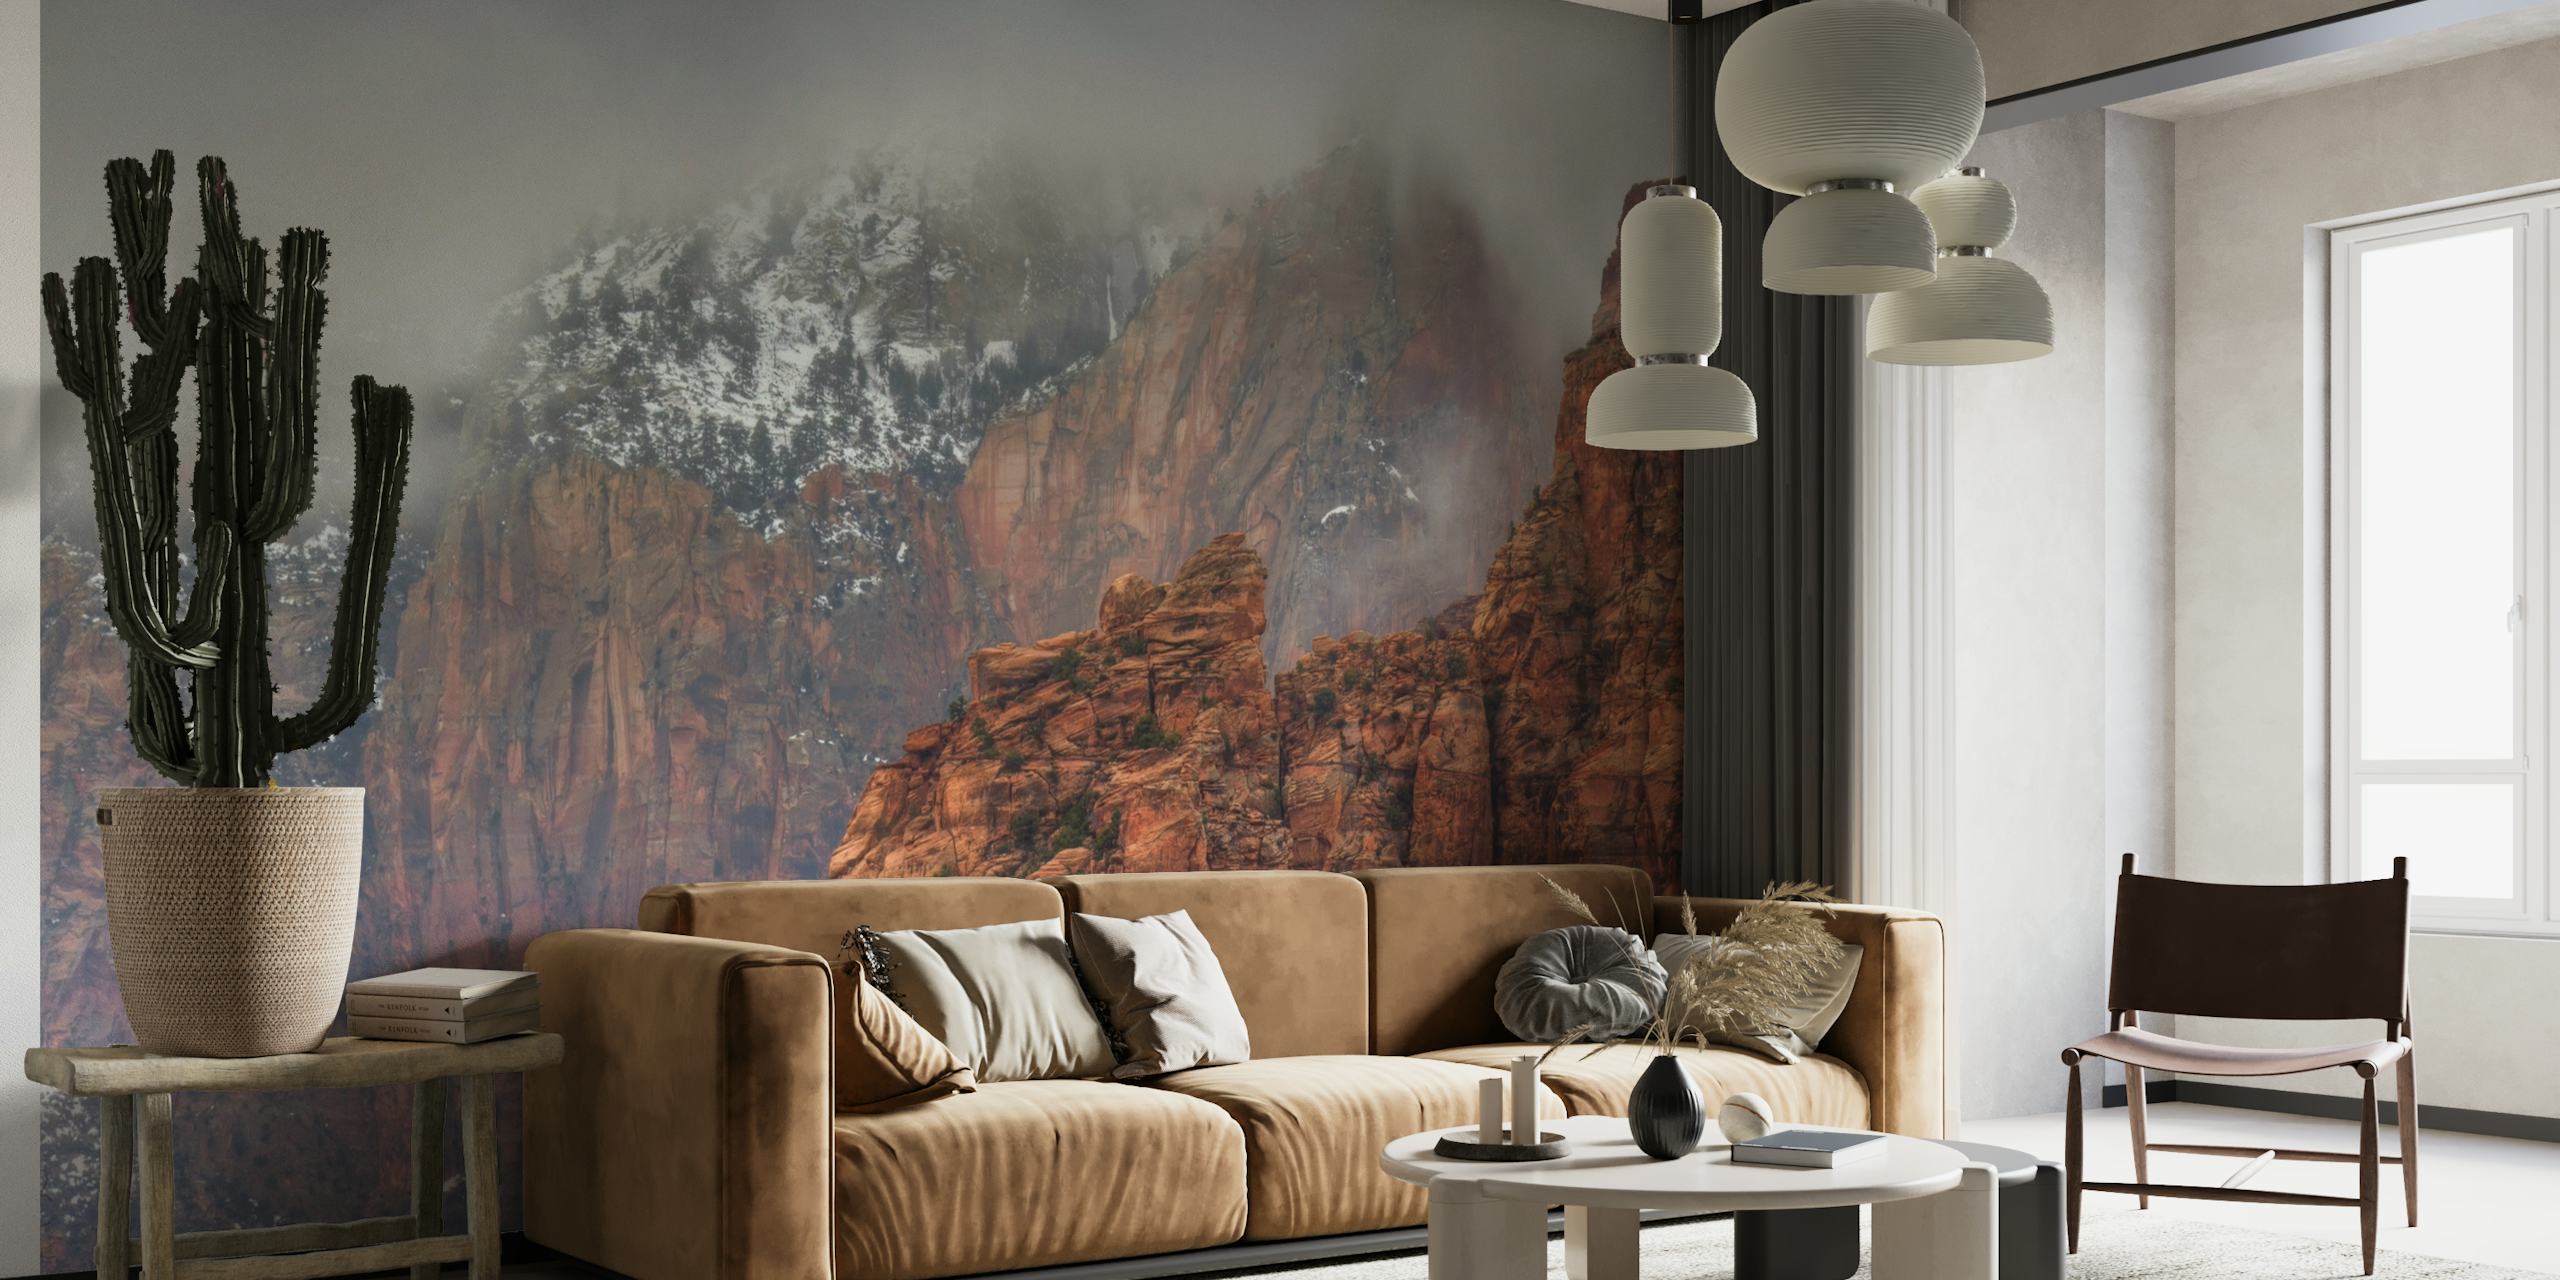 Misty bjergvægmaleri med stenede teksturer og varme toner